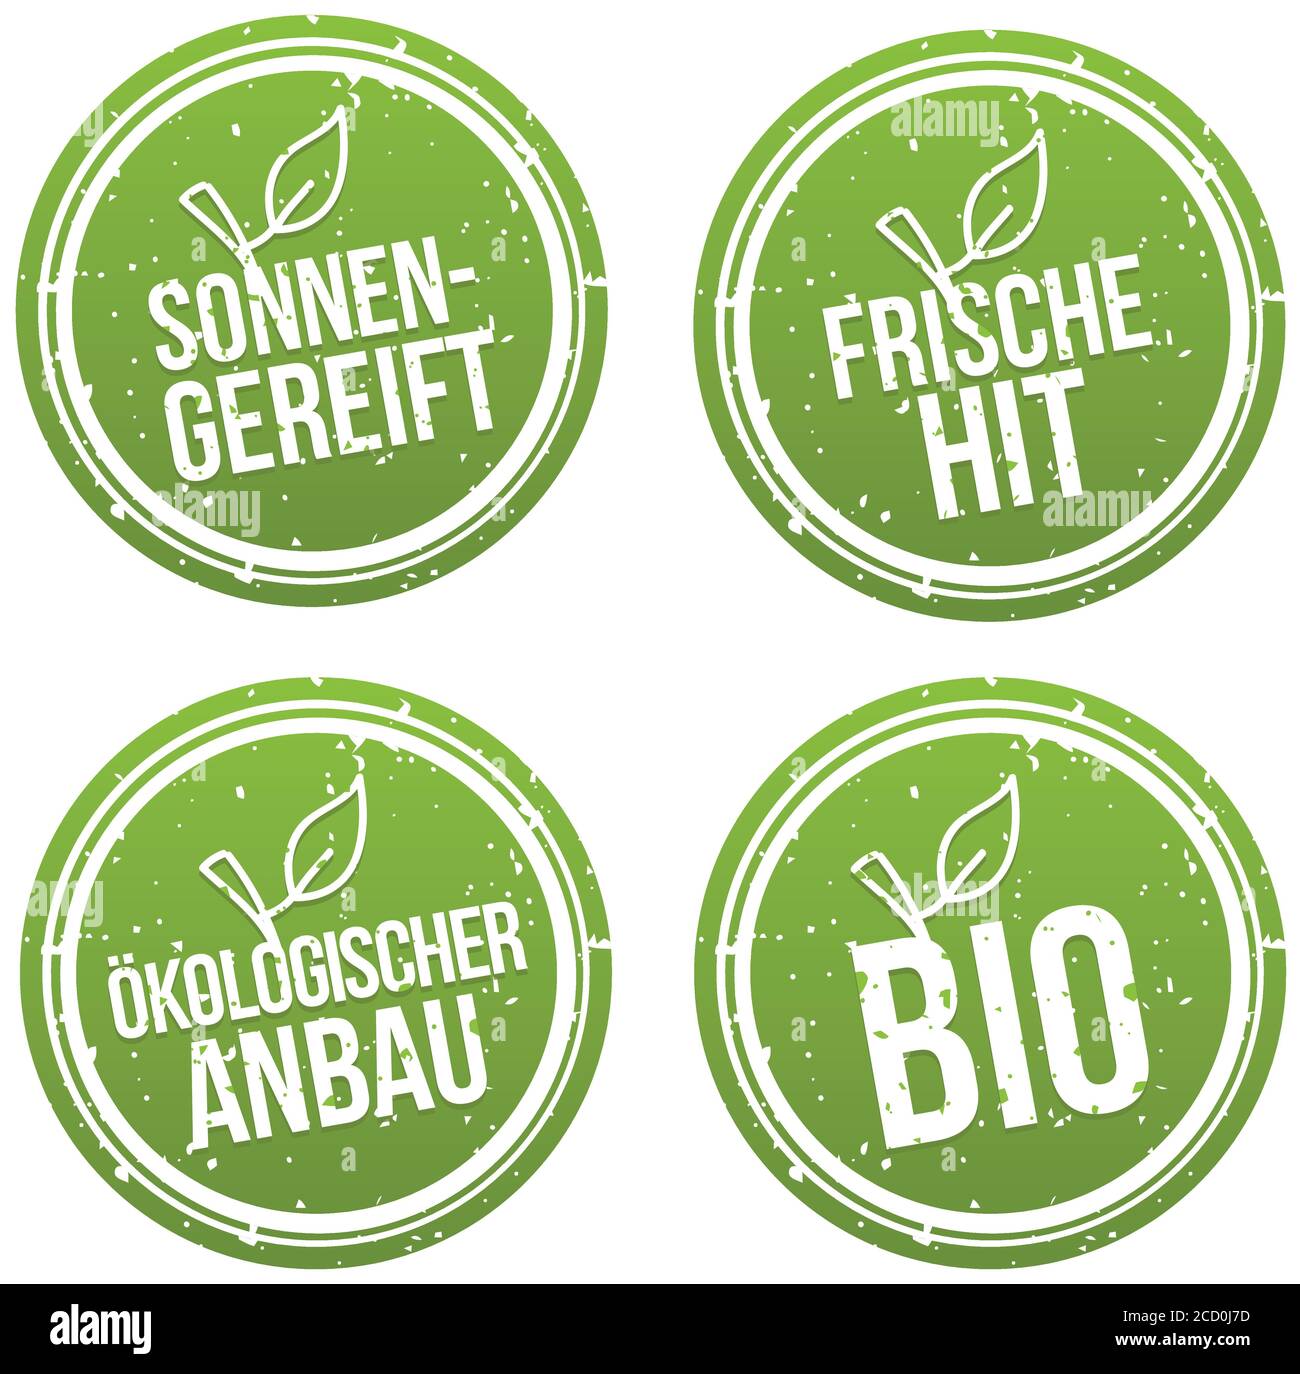 Sonnengereift, Frische Hit, Ökologischer Anbau und Bio Banner Set. Illustrazione Vettoriale